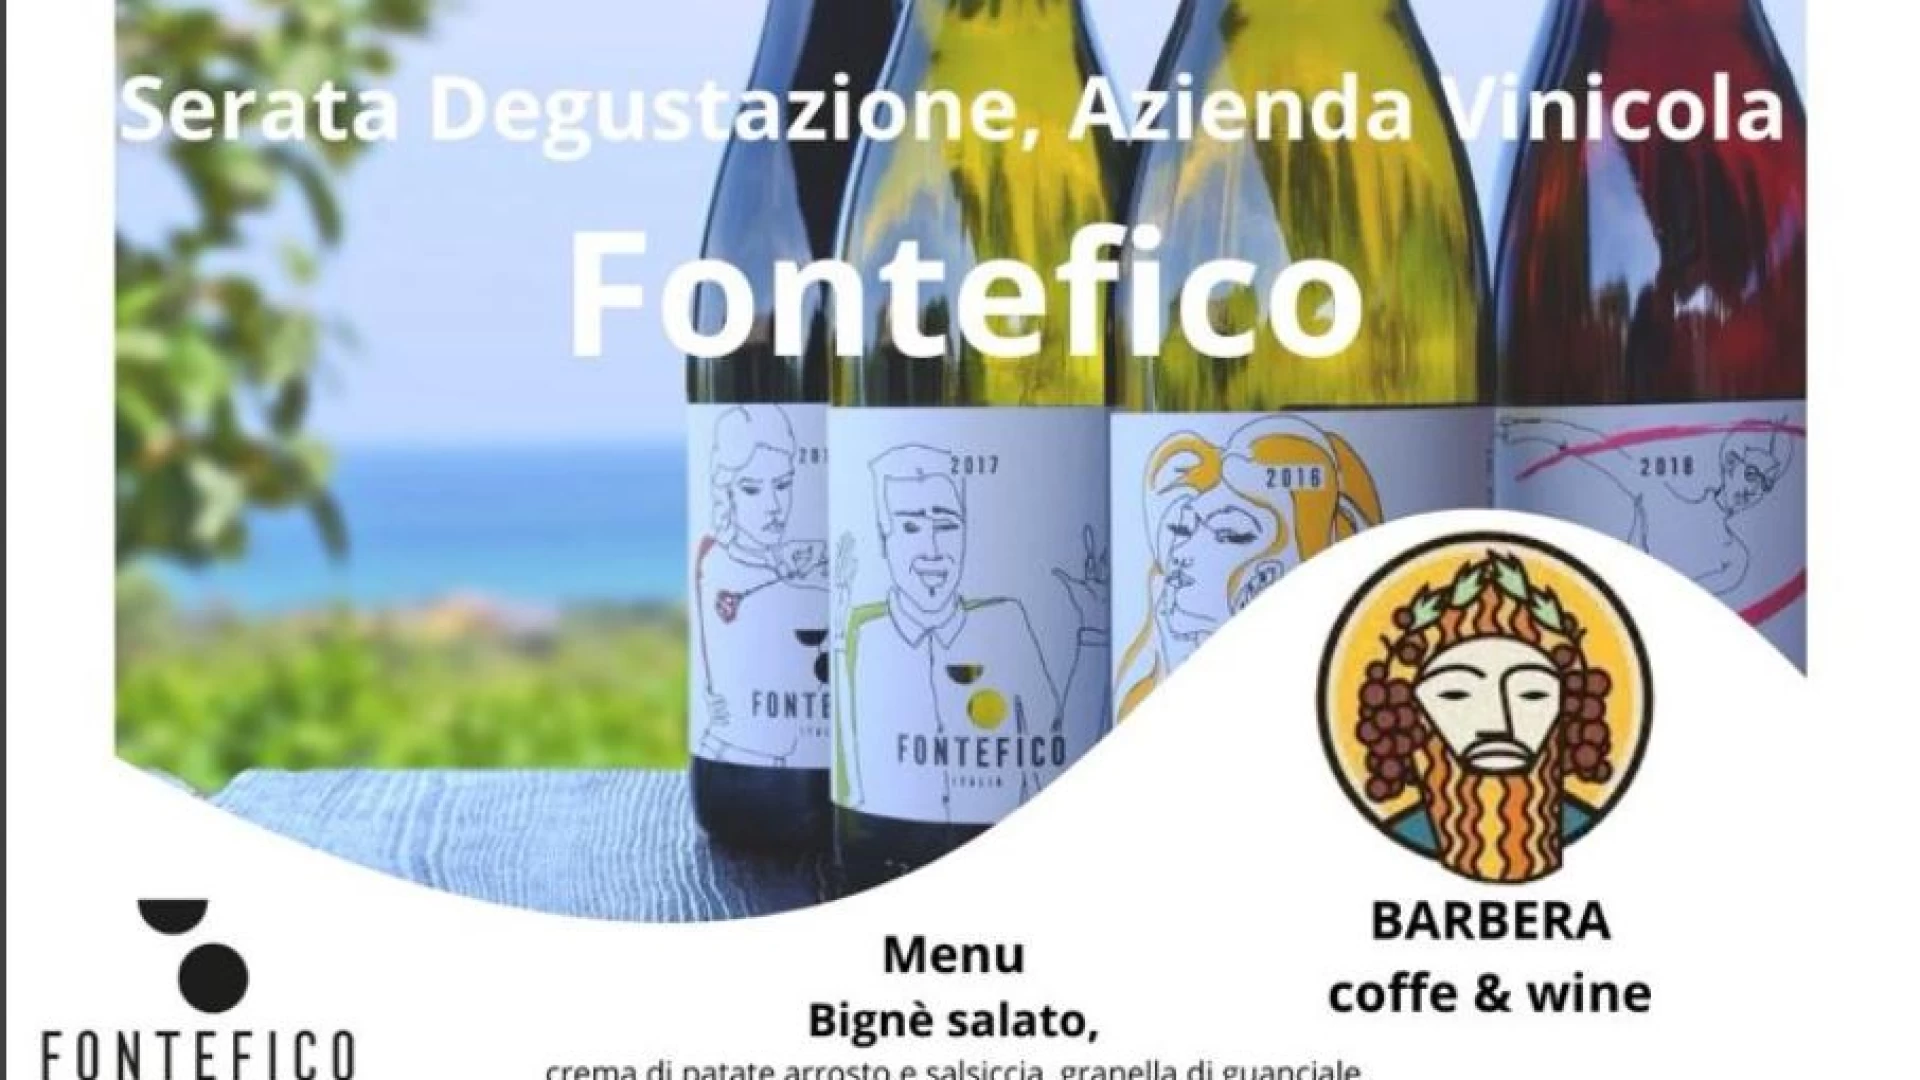 Isernia: al Barbera Coffe & Wine serata degustazione azienda vinicola Fontefico. Appuntamento da non perdere martedì 19 marzo.